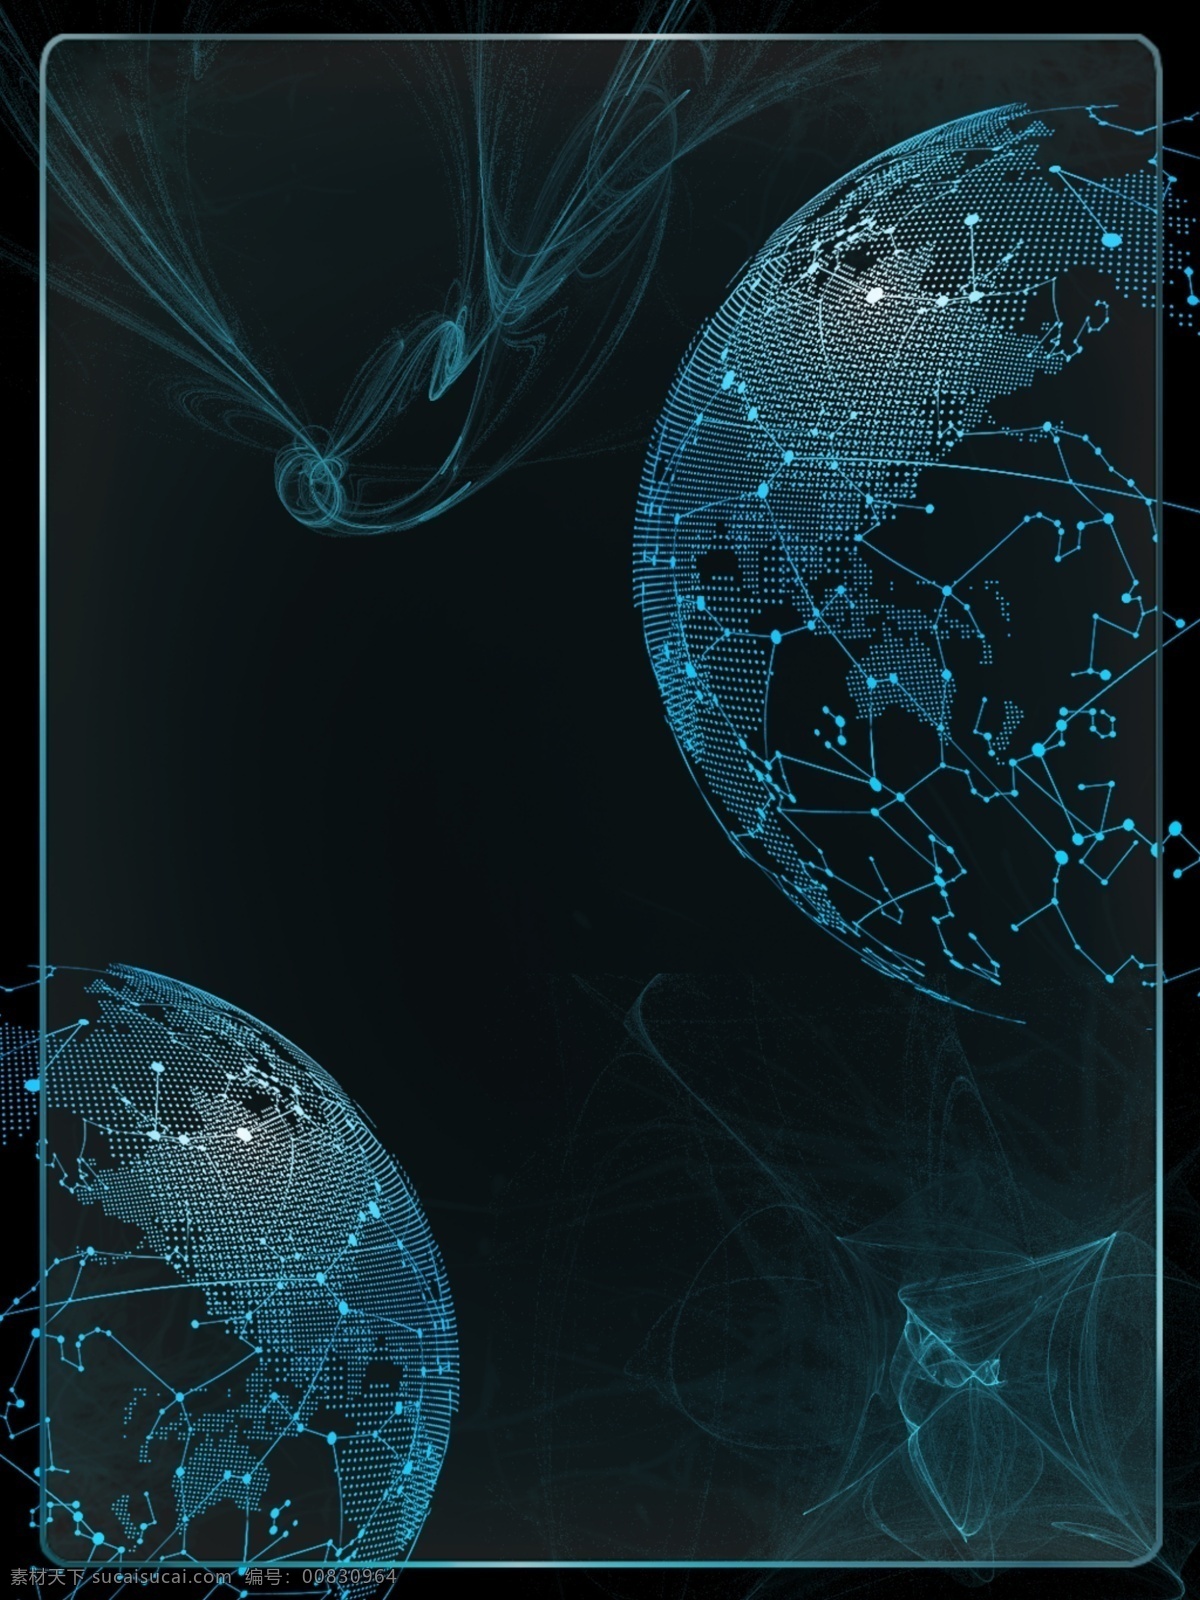 蓝色 科技 蓝光 地球 酷 炫 广告 背景 地图 光 边框 黑色背景 数码风 科技风 商务背景 活动背景 h5背景 数码